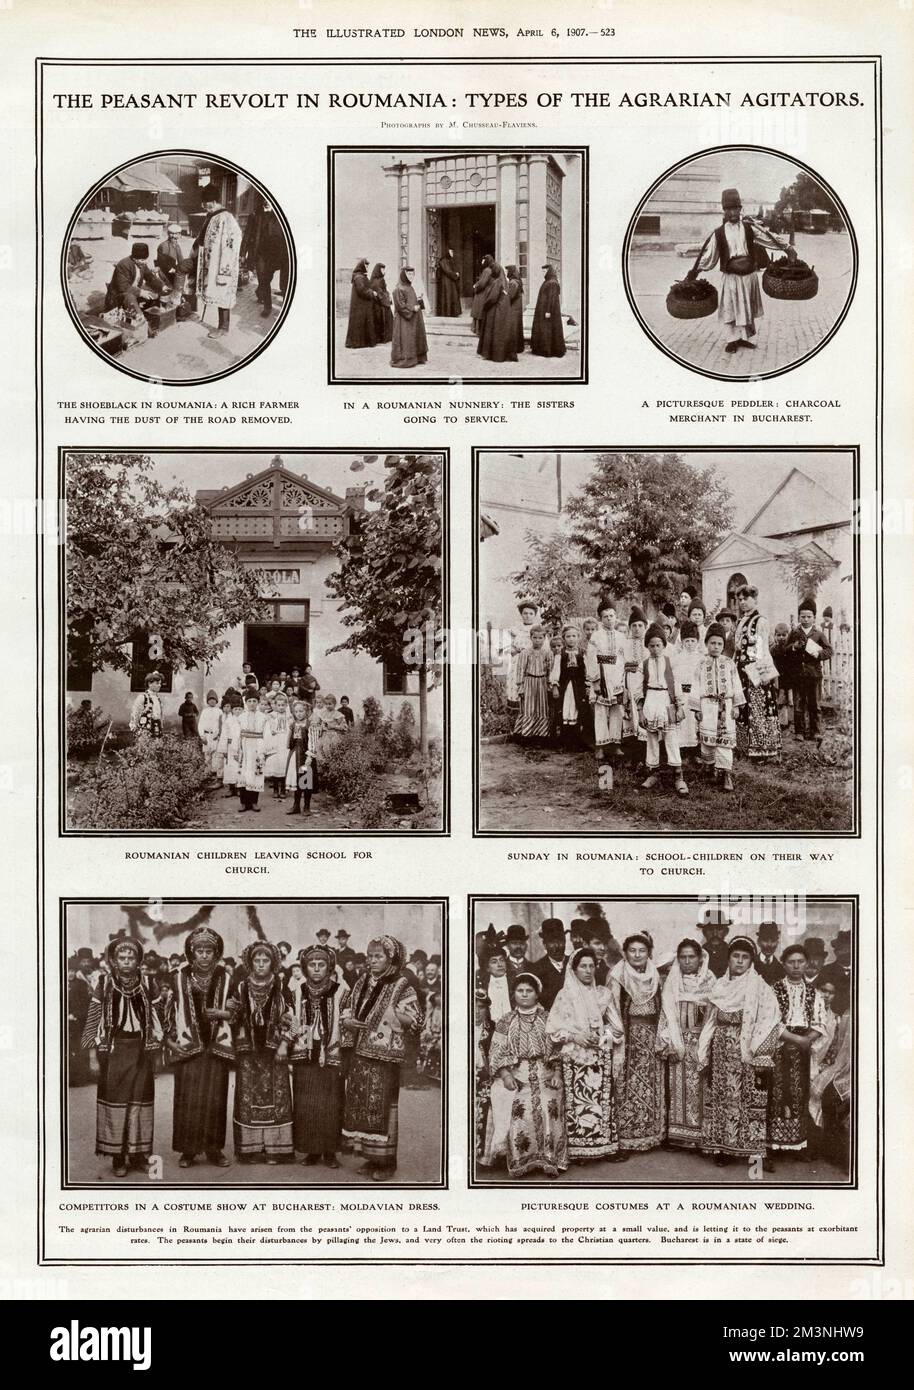 Weitere Arten von agrarischen Agitatoren des rumänischen Bauernaufstandes in den illustrierten London News. Die Fotografien zeigen die Art rumänischer Menschen, die angeblich in die Revolte verwickelt waren, die im März 1907 begann und nach der Einberufung der Armee zur Wiederherstellung der Ordnung zum Tod vieler Tausender führte. Im Preis inbegriffen sind ein Schuhkragen, der den Staub der Straße von den Stiefeln eines reichen Bauern entfernt; ein rumänisches Nonnenkloster; ein Holzkohlehändler; Kinder, die die Schule verlassen und auf dem Weg zur Kirche sind; moldauisches Kleid; Kostüme bei einer Hochzeit. Datum: 1907 Stockfoto